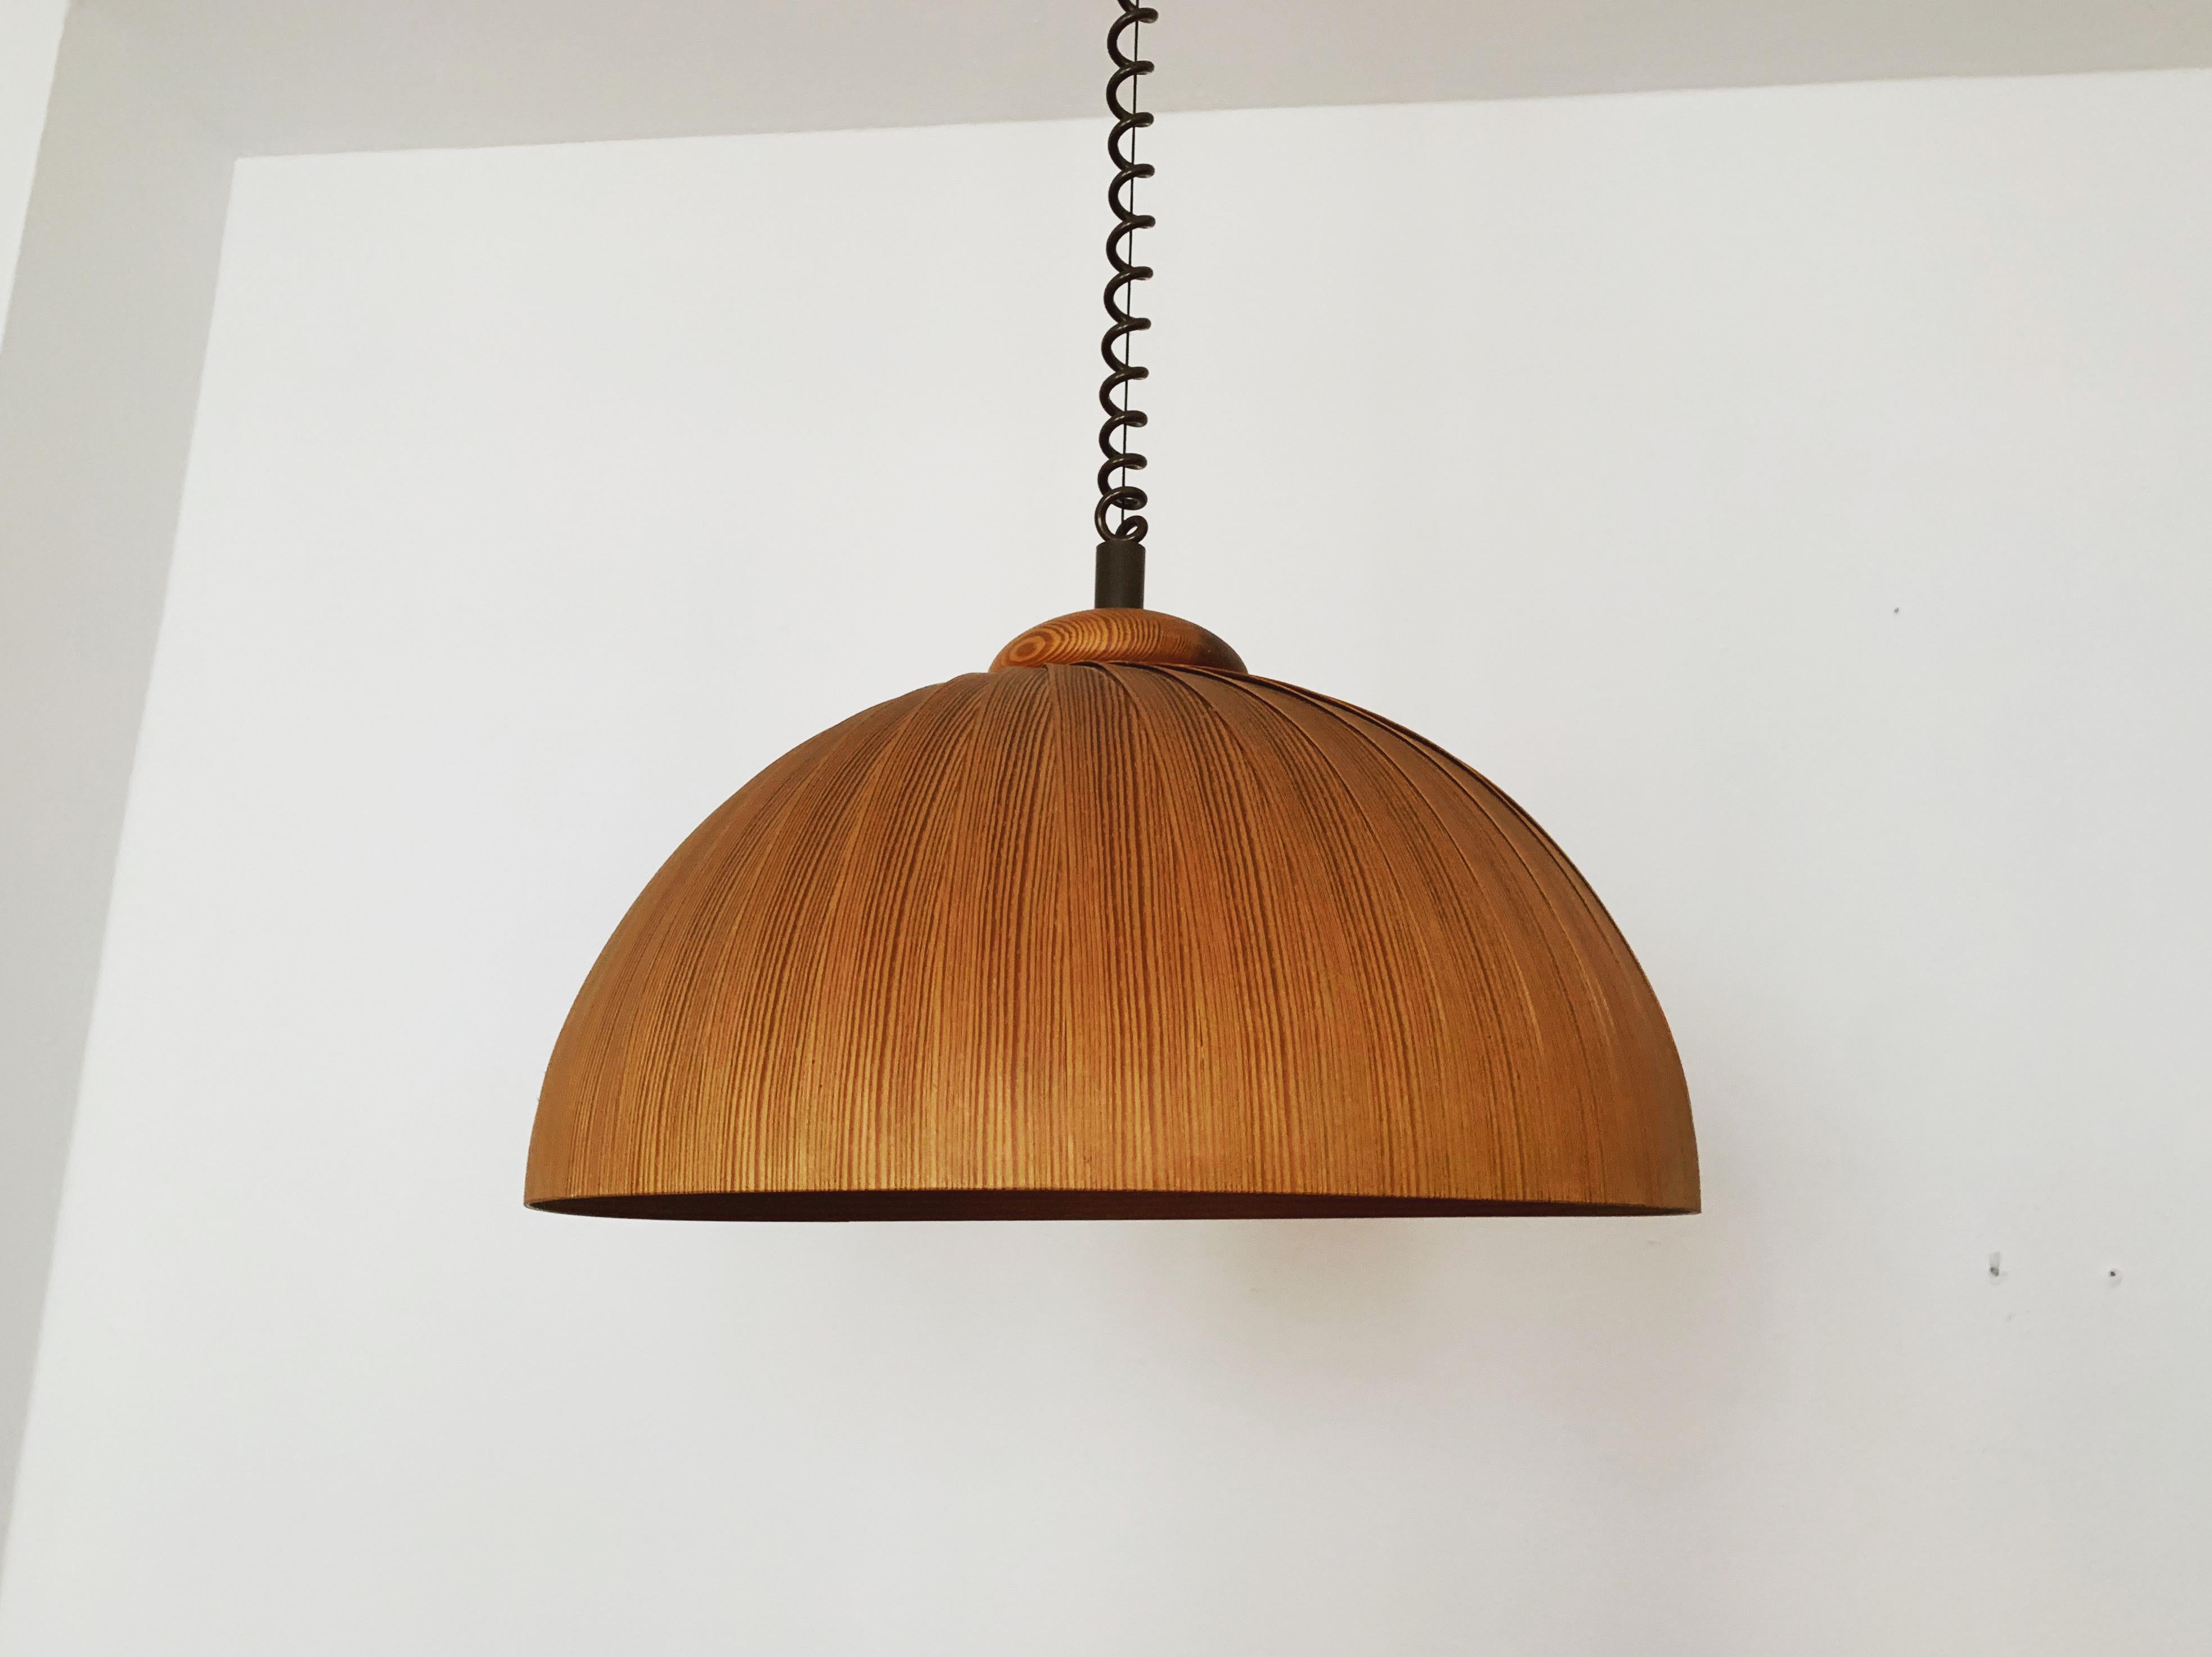 Extraordinairement belle lampe suspendue en bois des années 1960.
Traitement aimant et de haute qualité.
Le Design/One et le matériau créent une lumière très chaude et agréable.
Réglable en hauteur en continu grâce à la fonction de